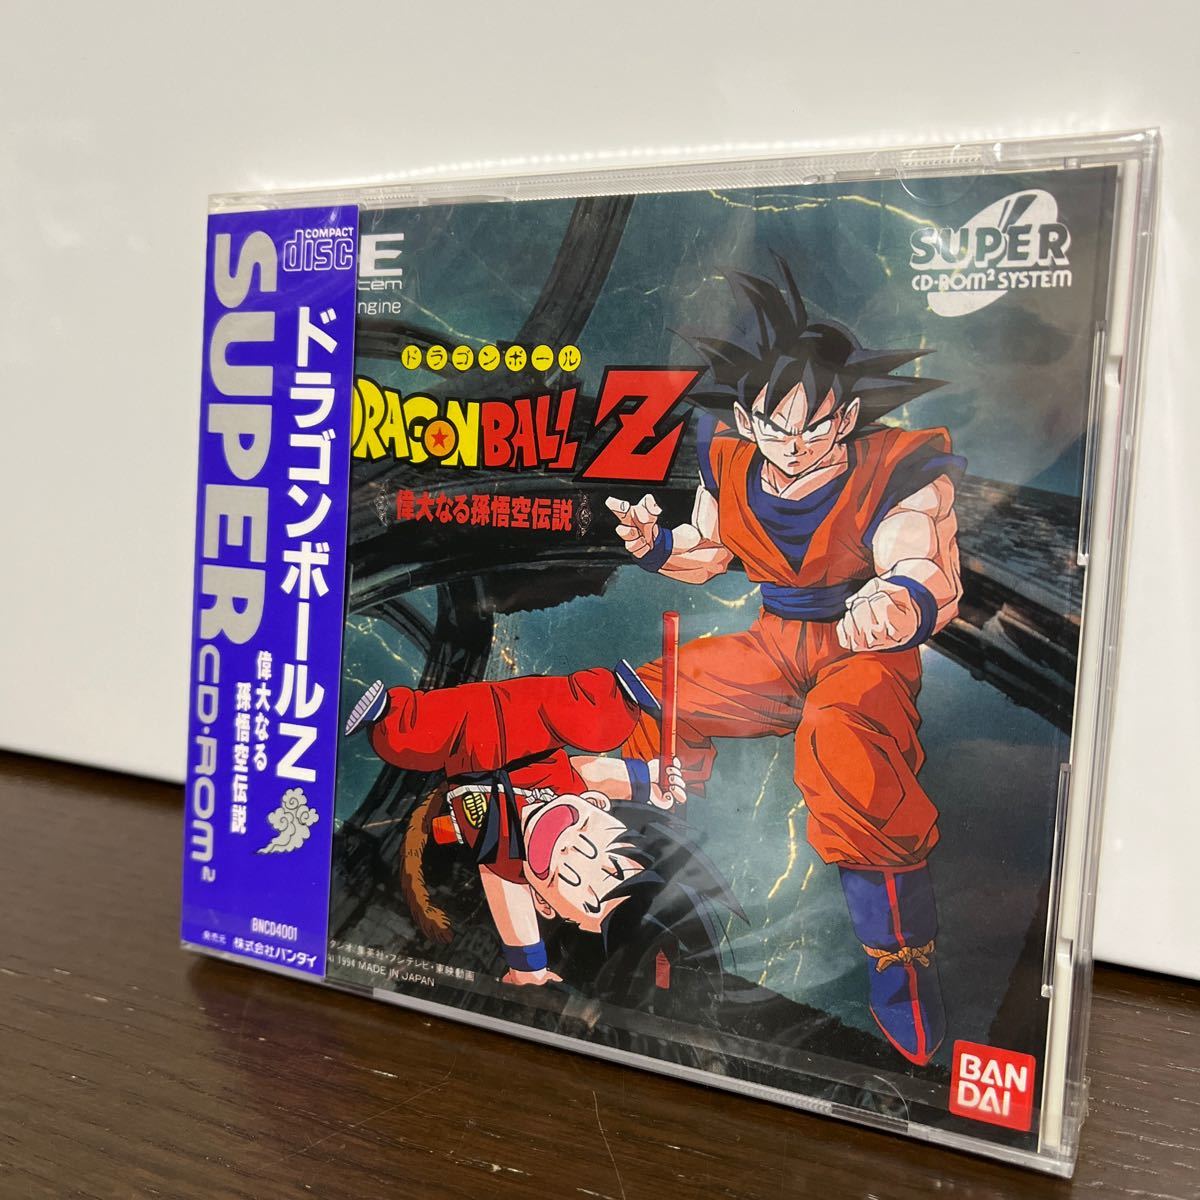 未開封 送料無料 PCエンジン ドラゴンボールＺ偉大なる孫悟空伝説 SUPER CD ROM Engine PCE DRAGON BALL Z BANDAI 1994 JAPAN SYSTEM